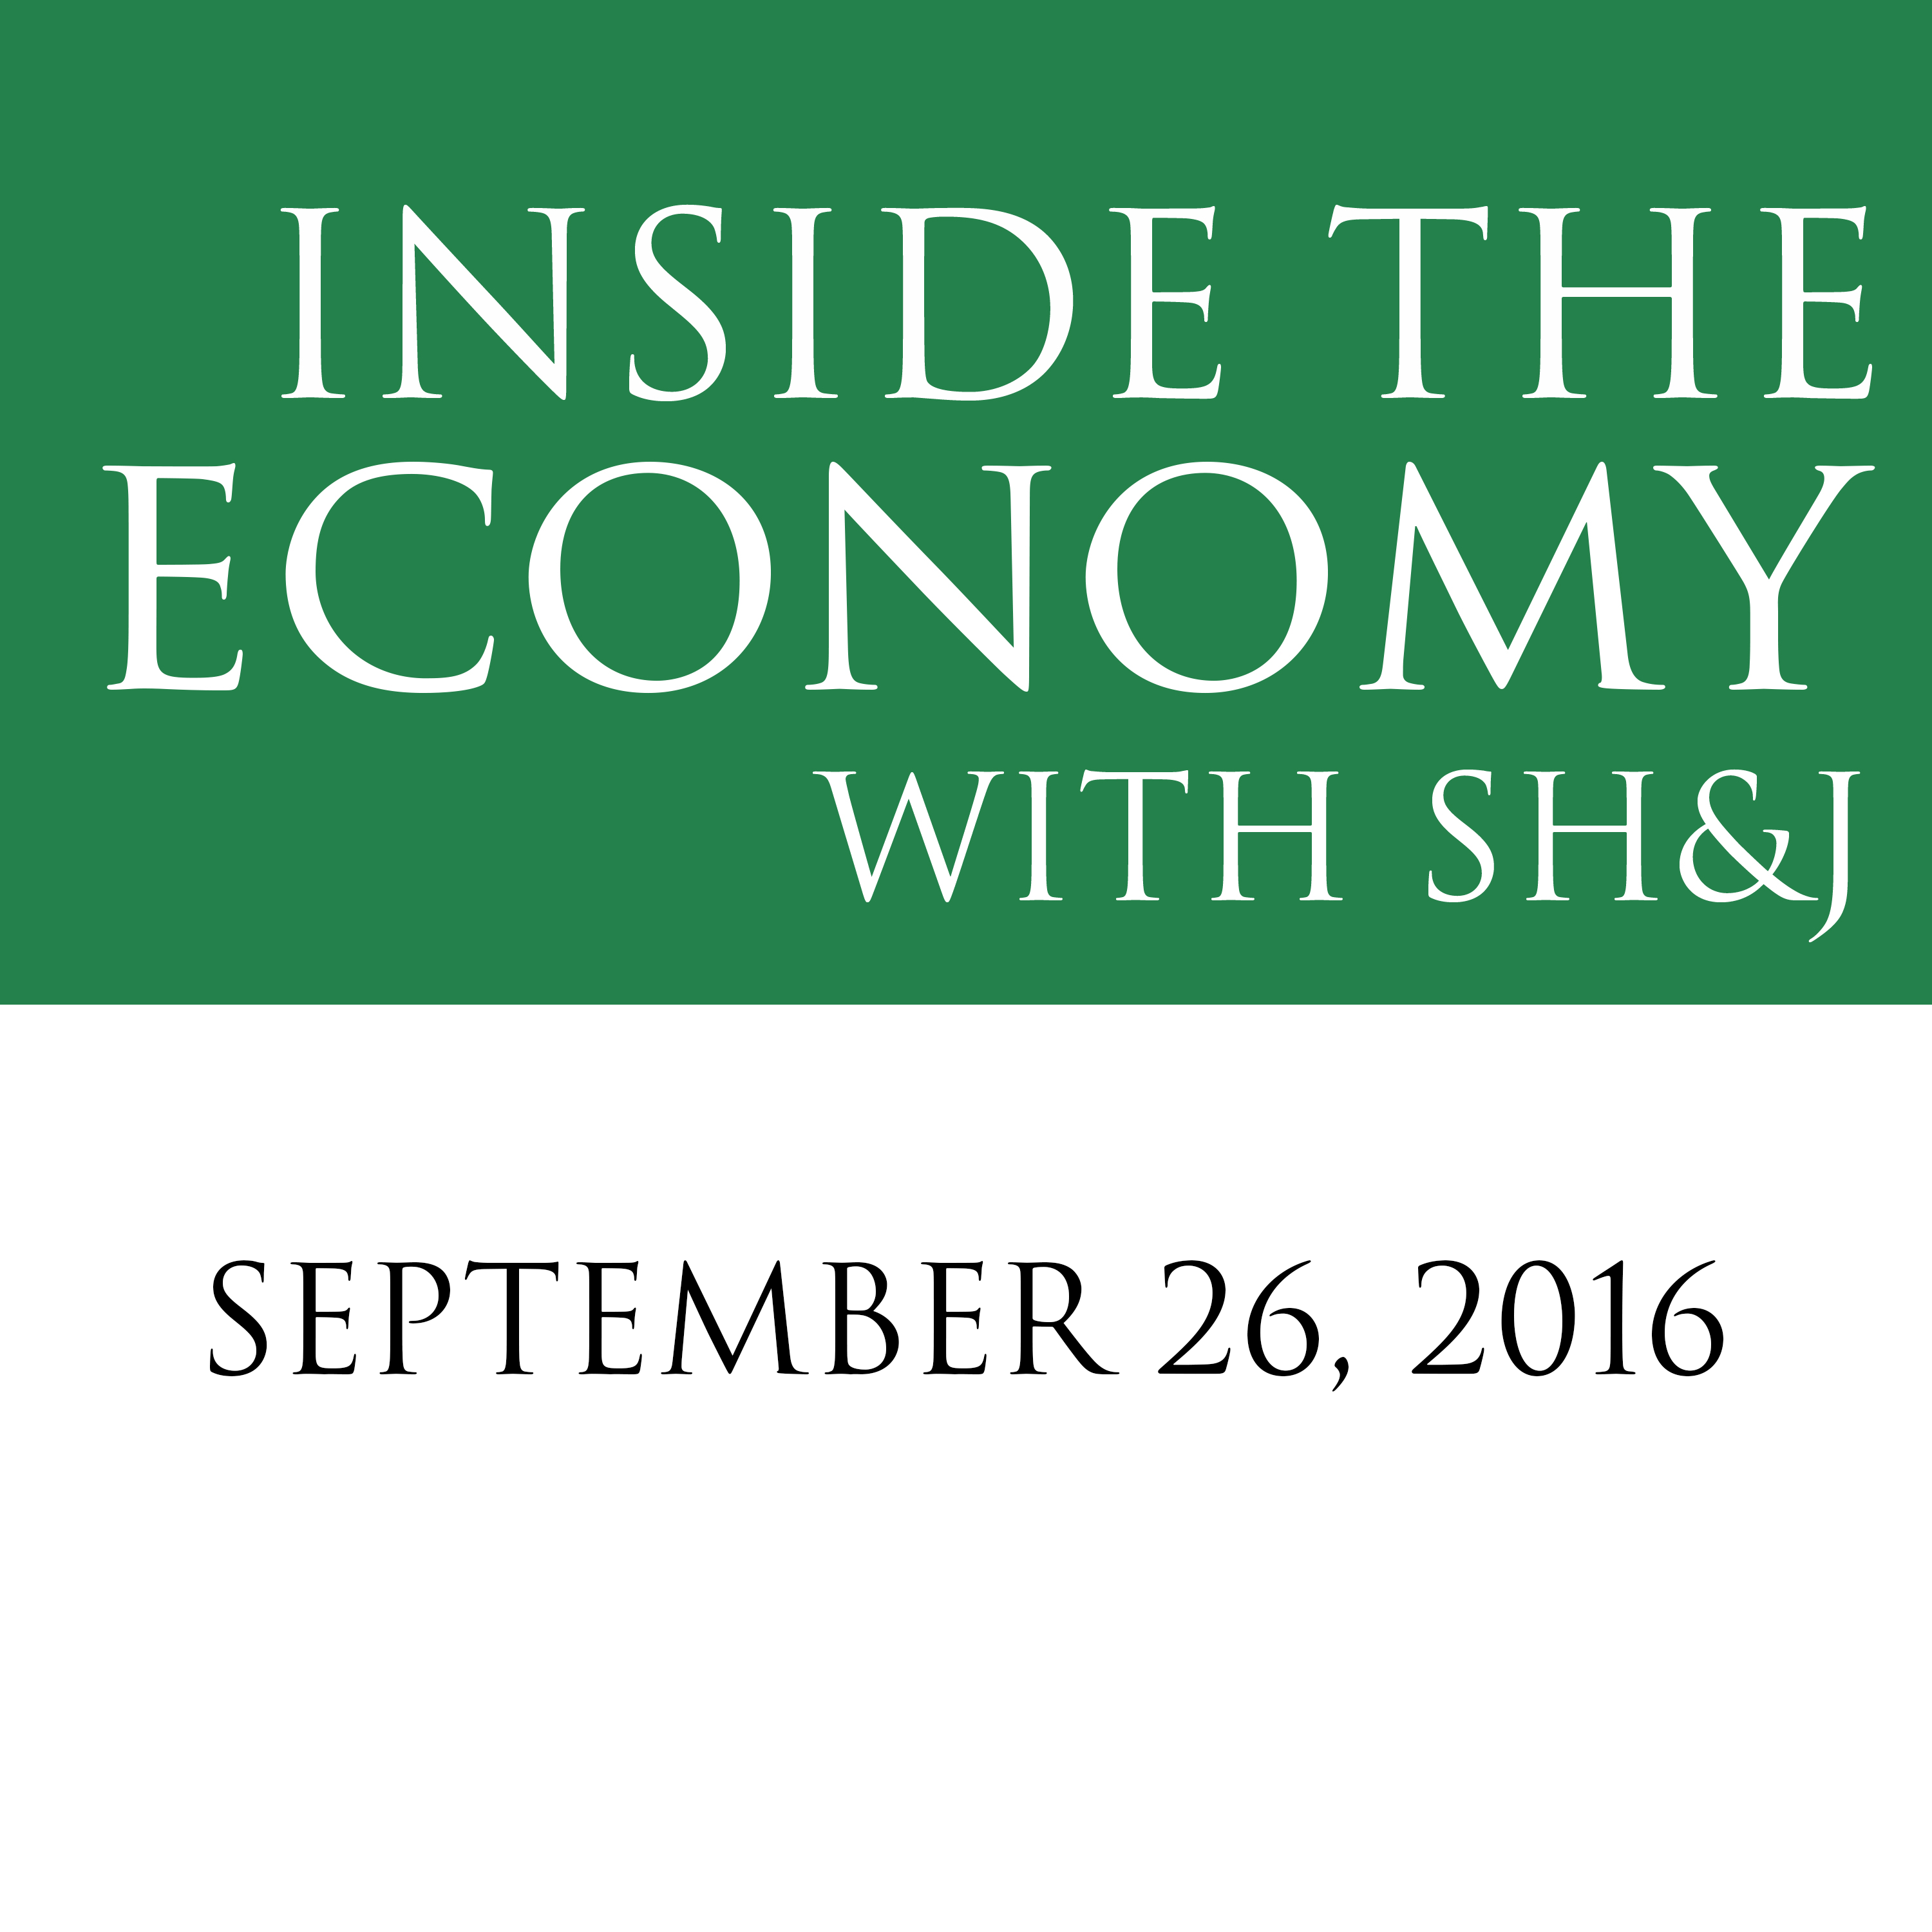 September 26, 2016  --  Inside the Economy with SH&J